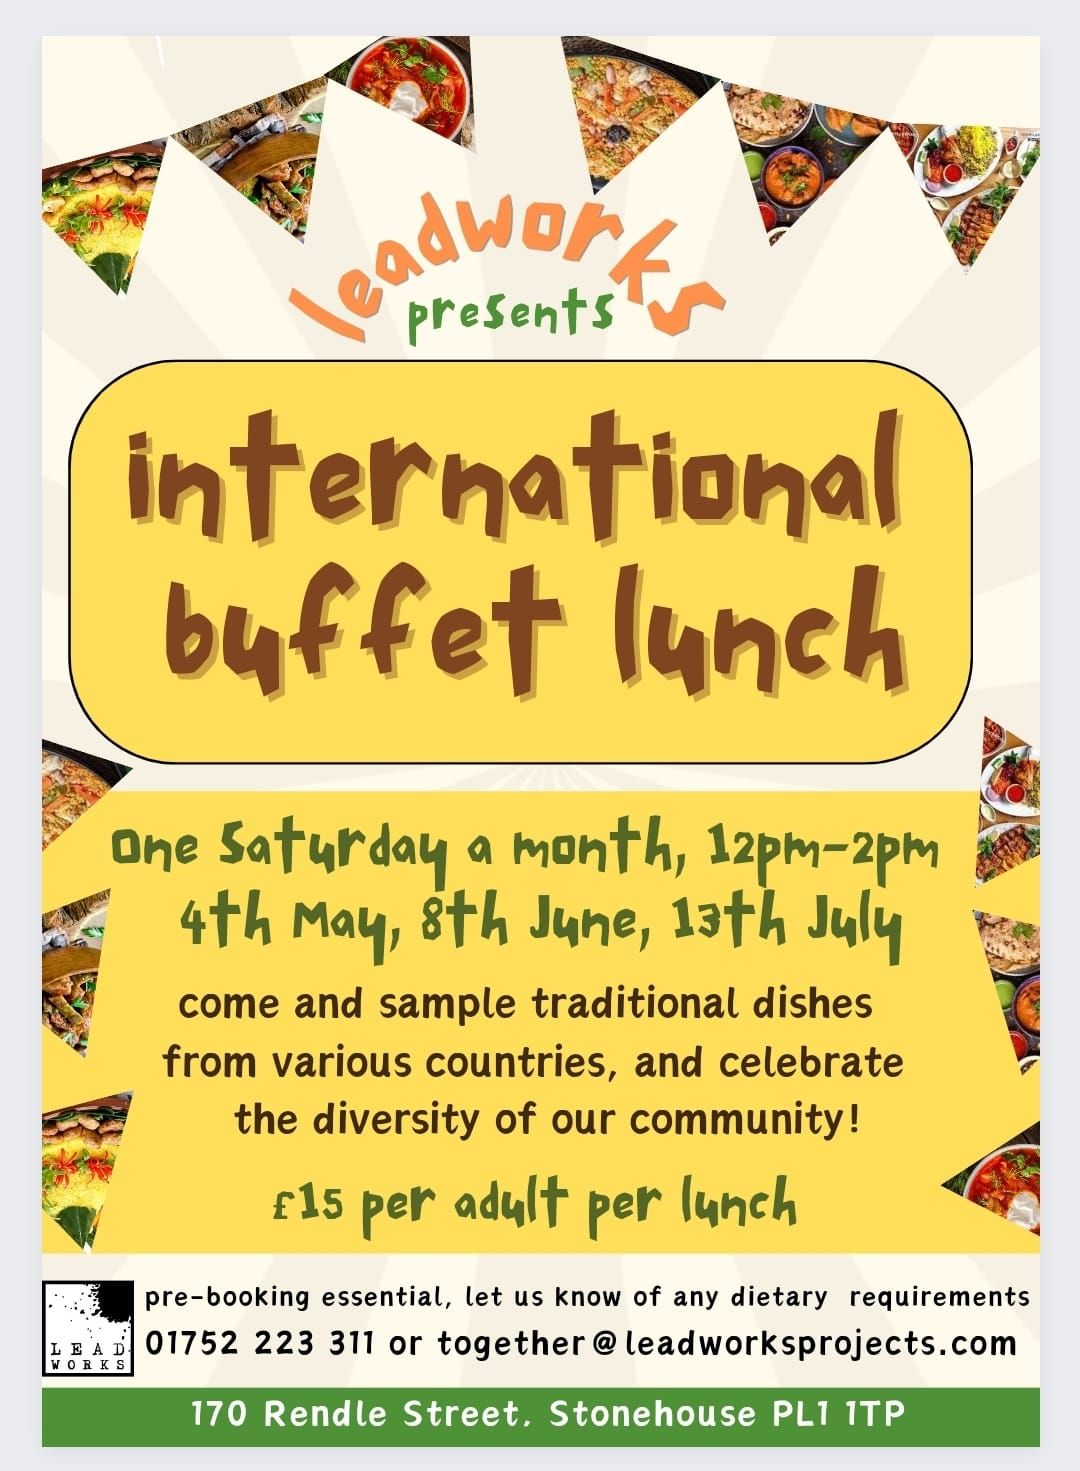 International Buffet Lunch